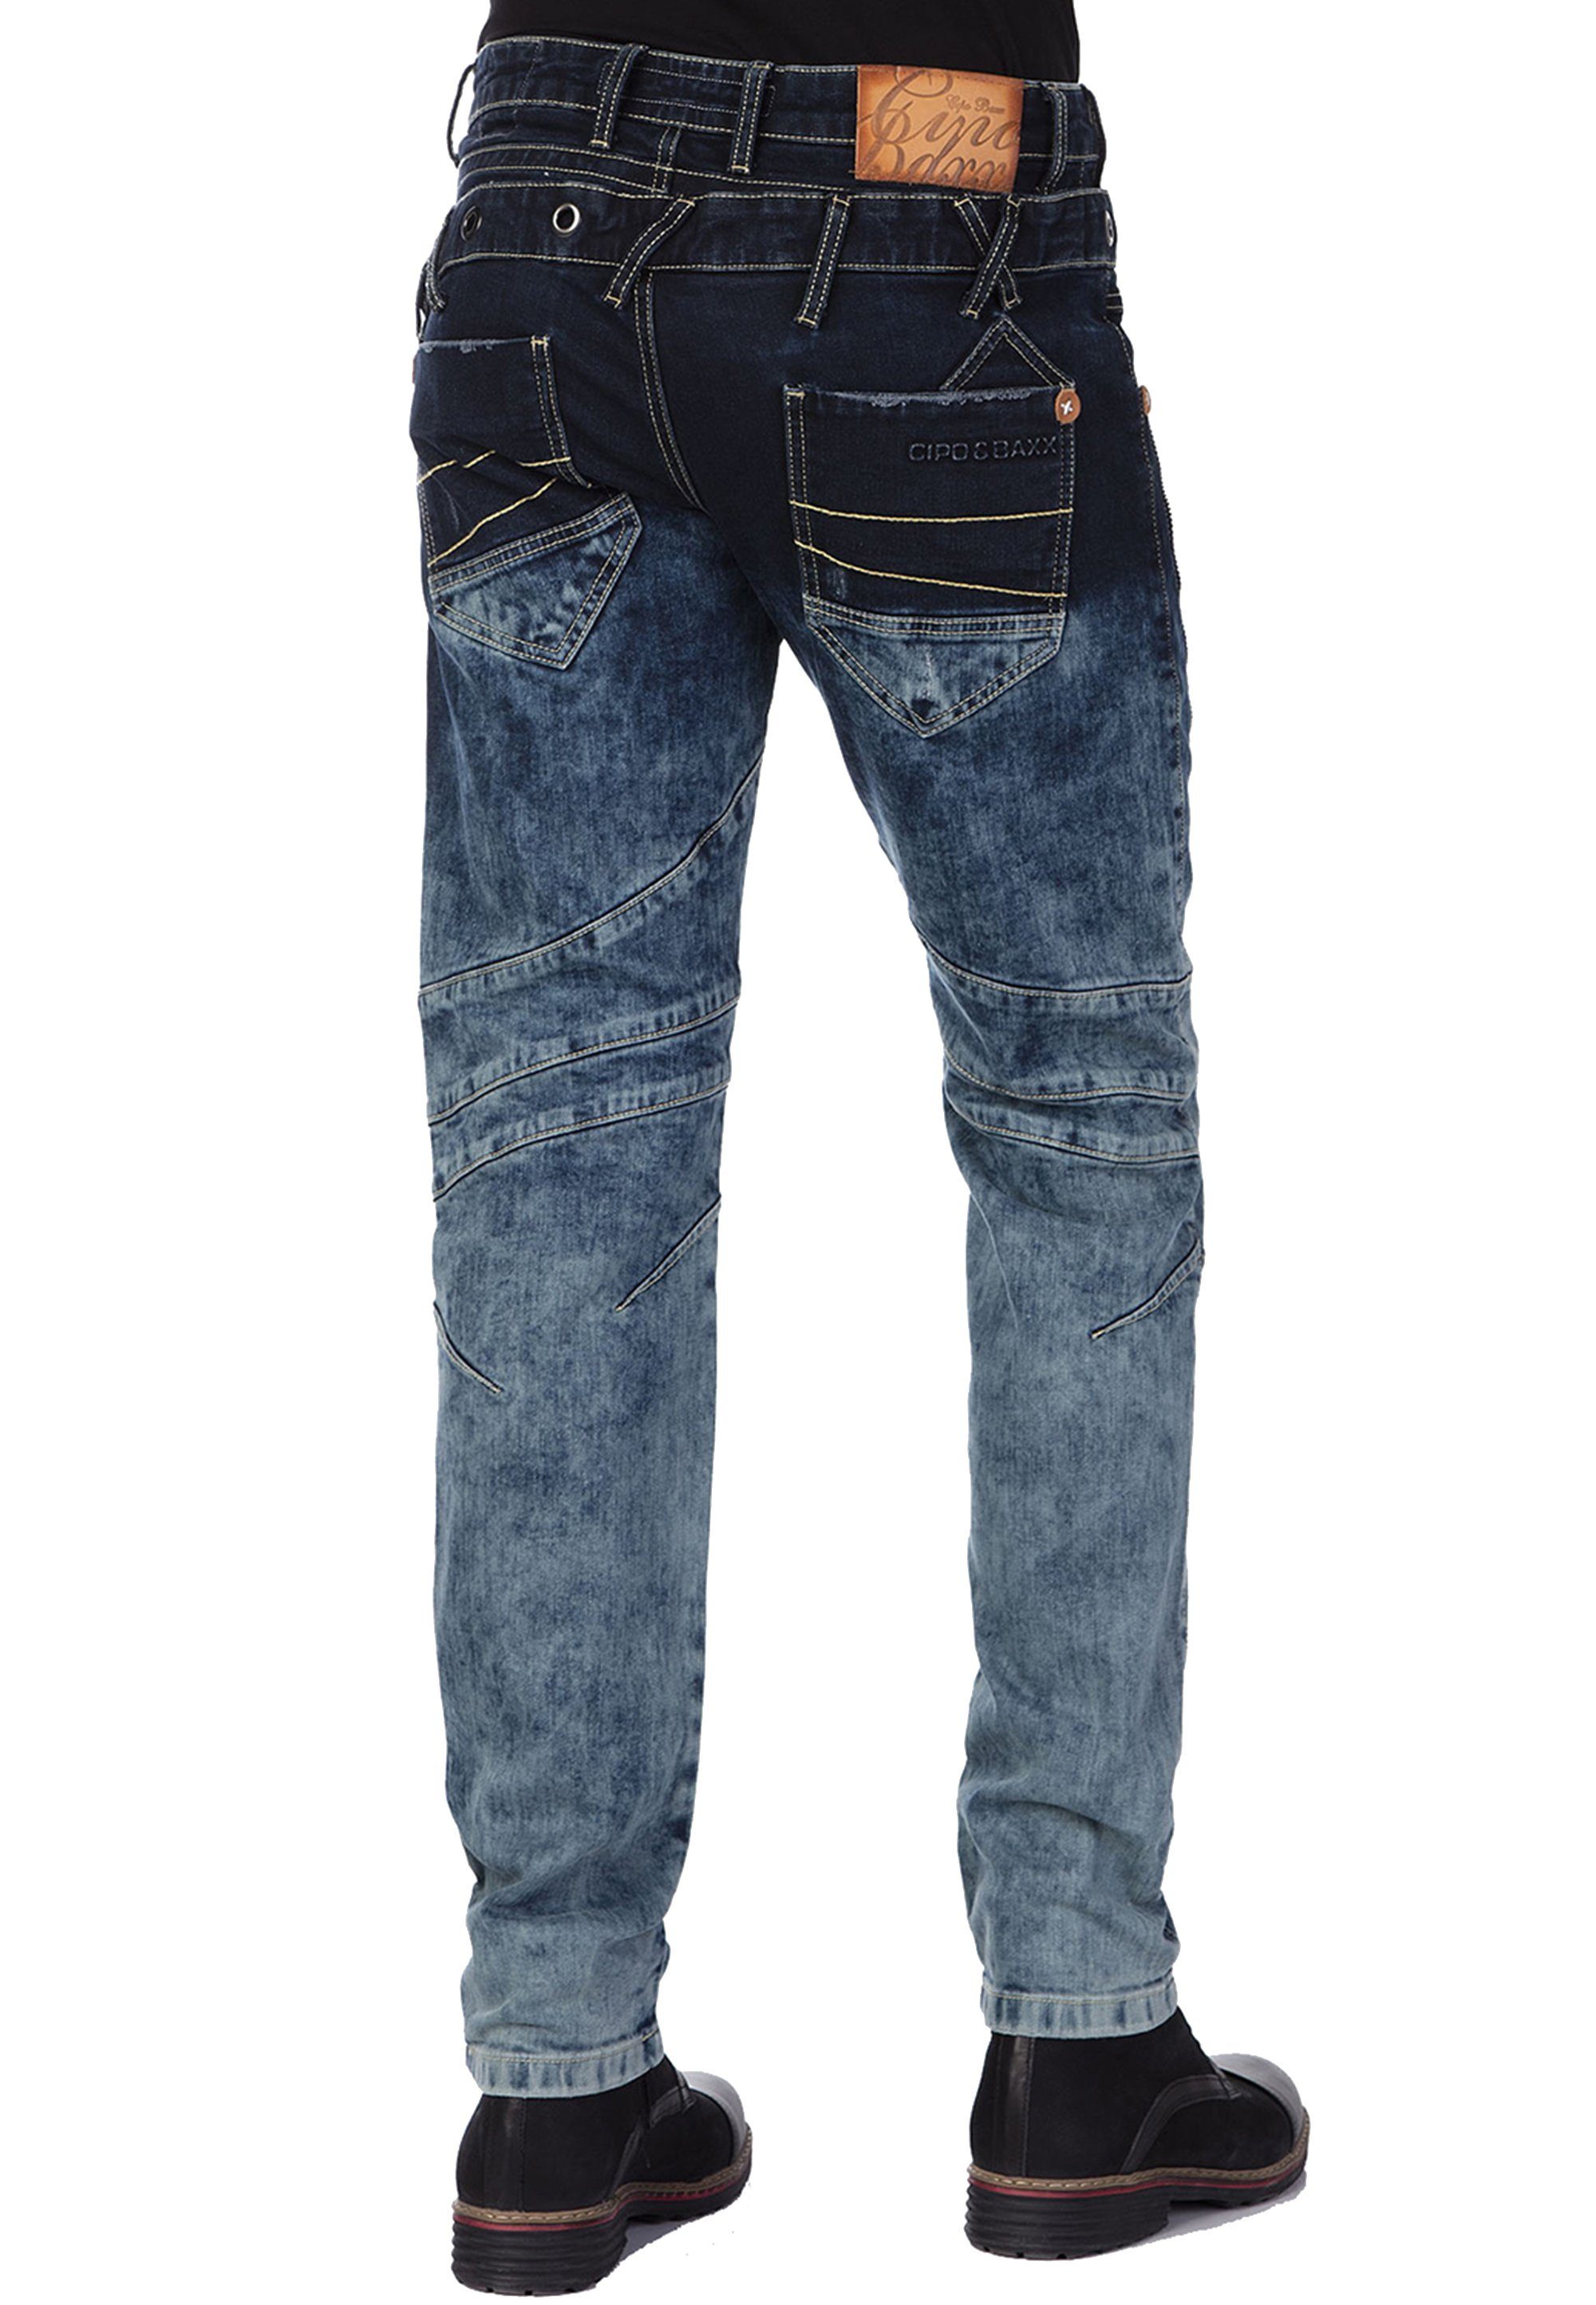 Baxx & Doppelbund Bequeme Cipo stylischem Jeans mit